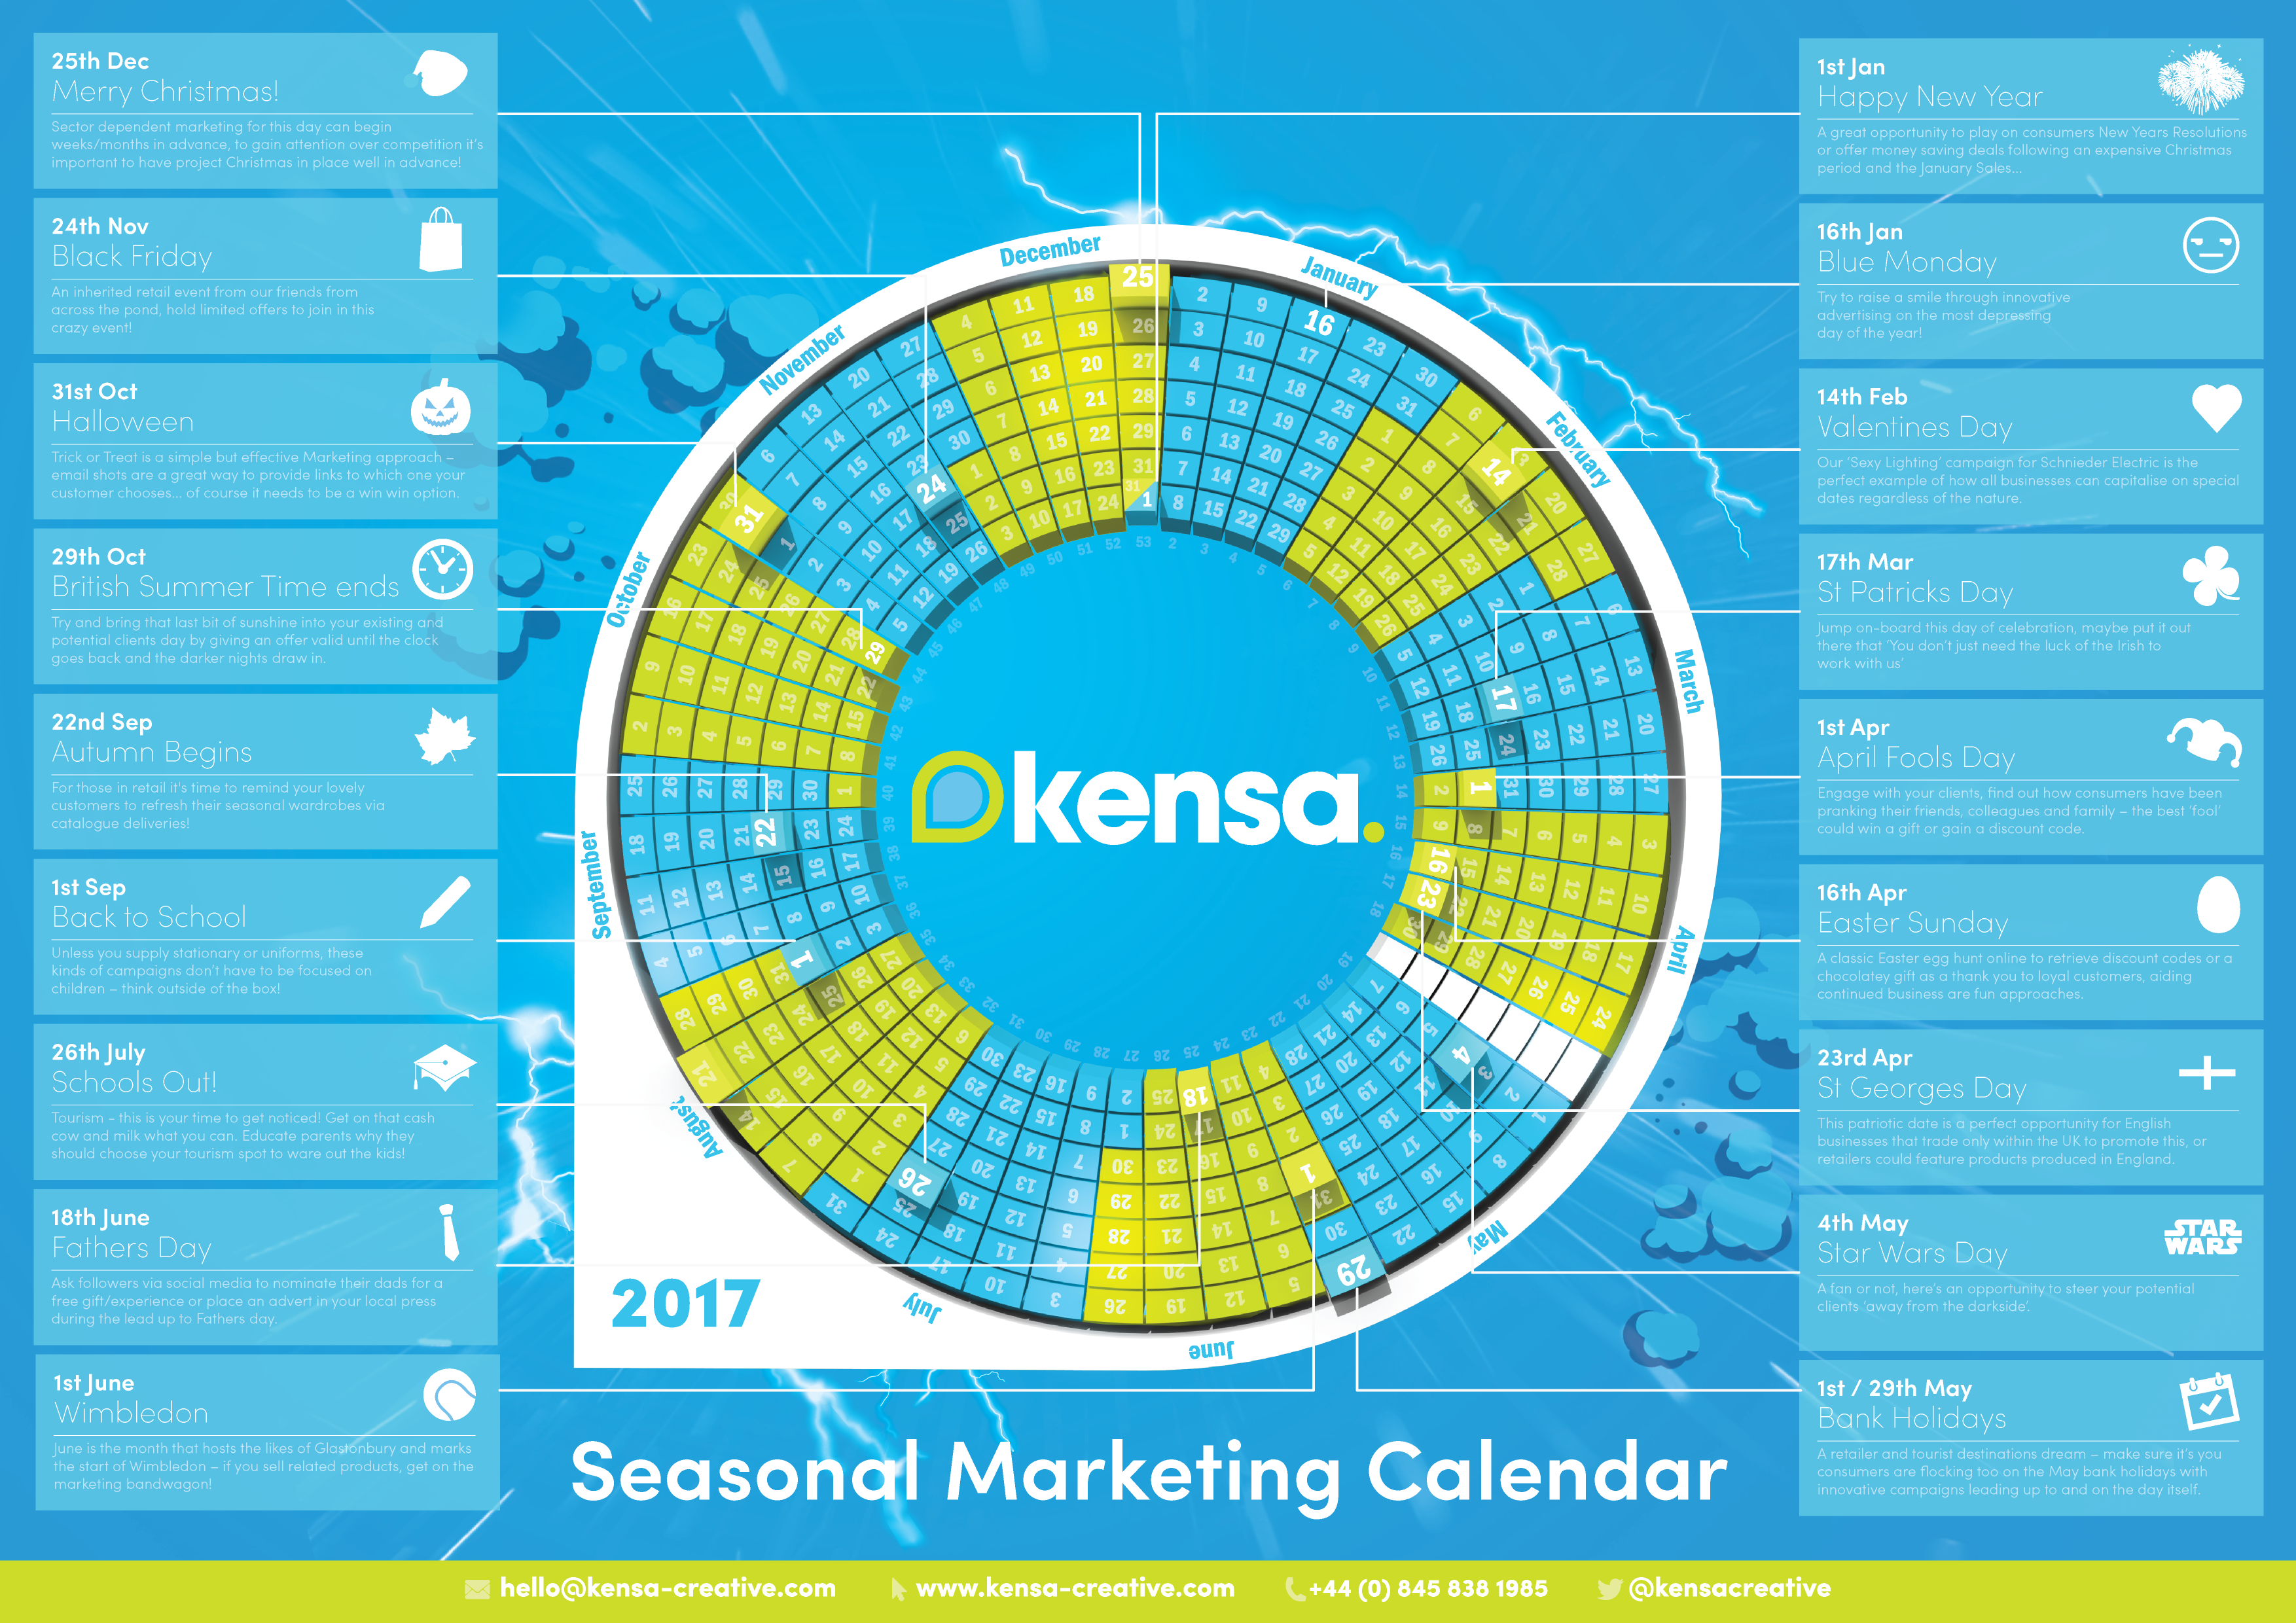 Kensa 2017 seasonal marketing calendar